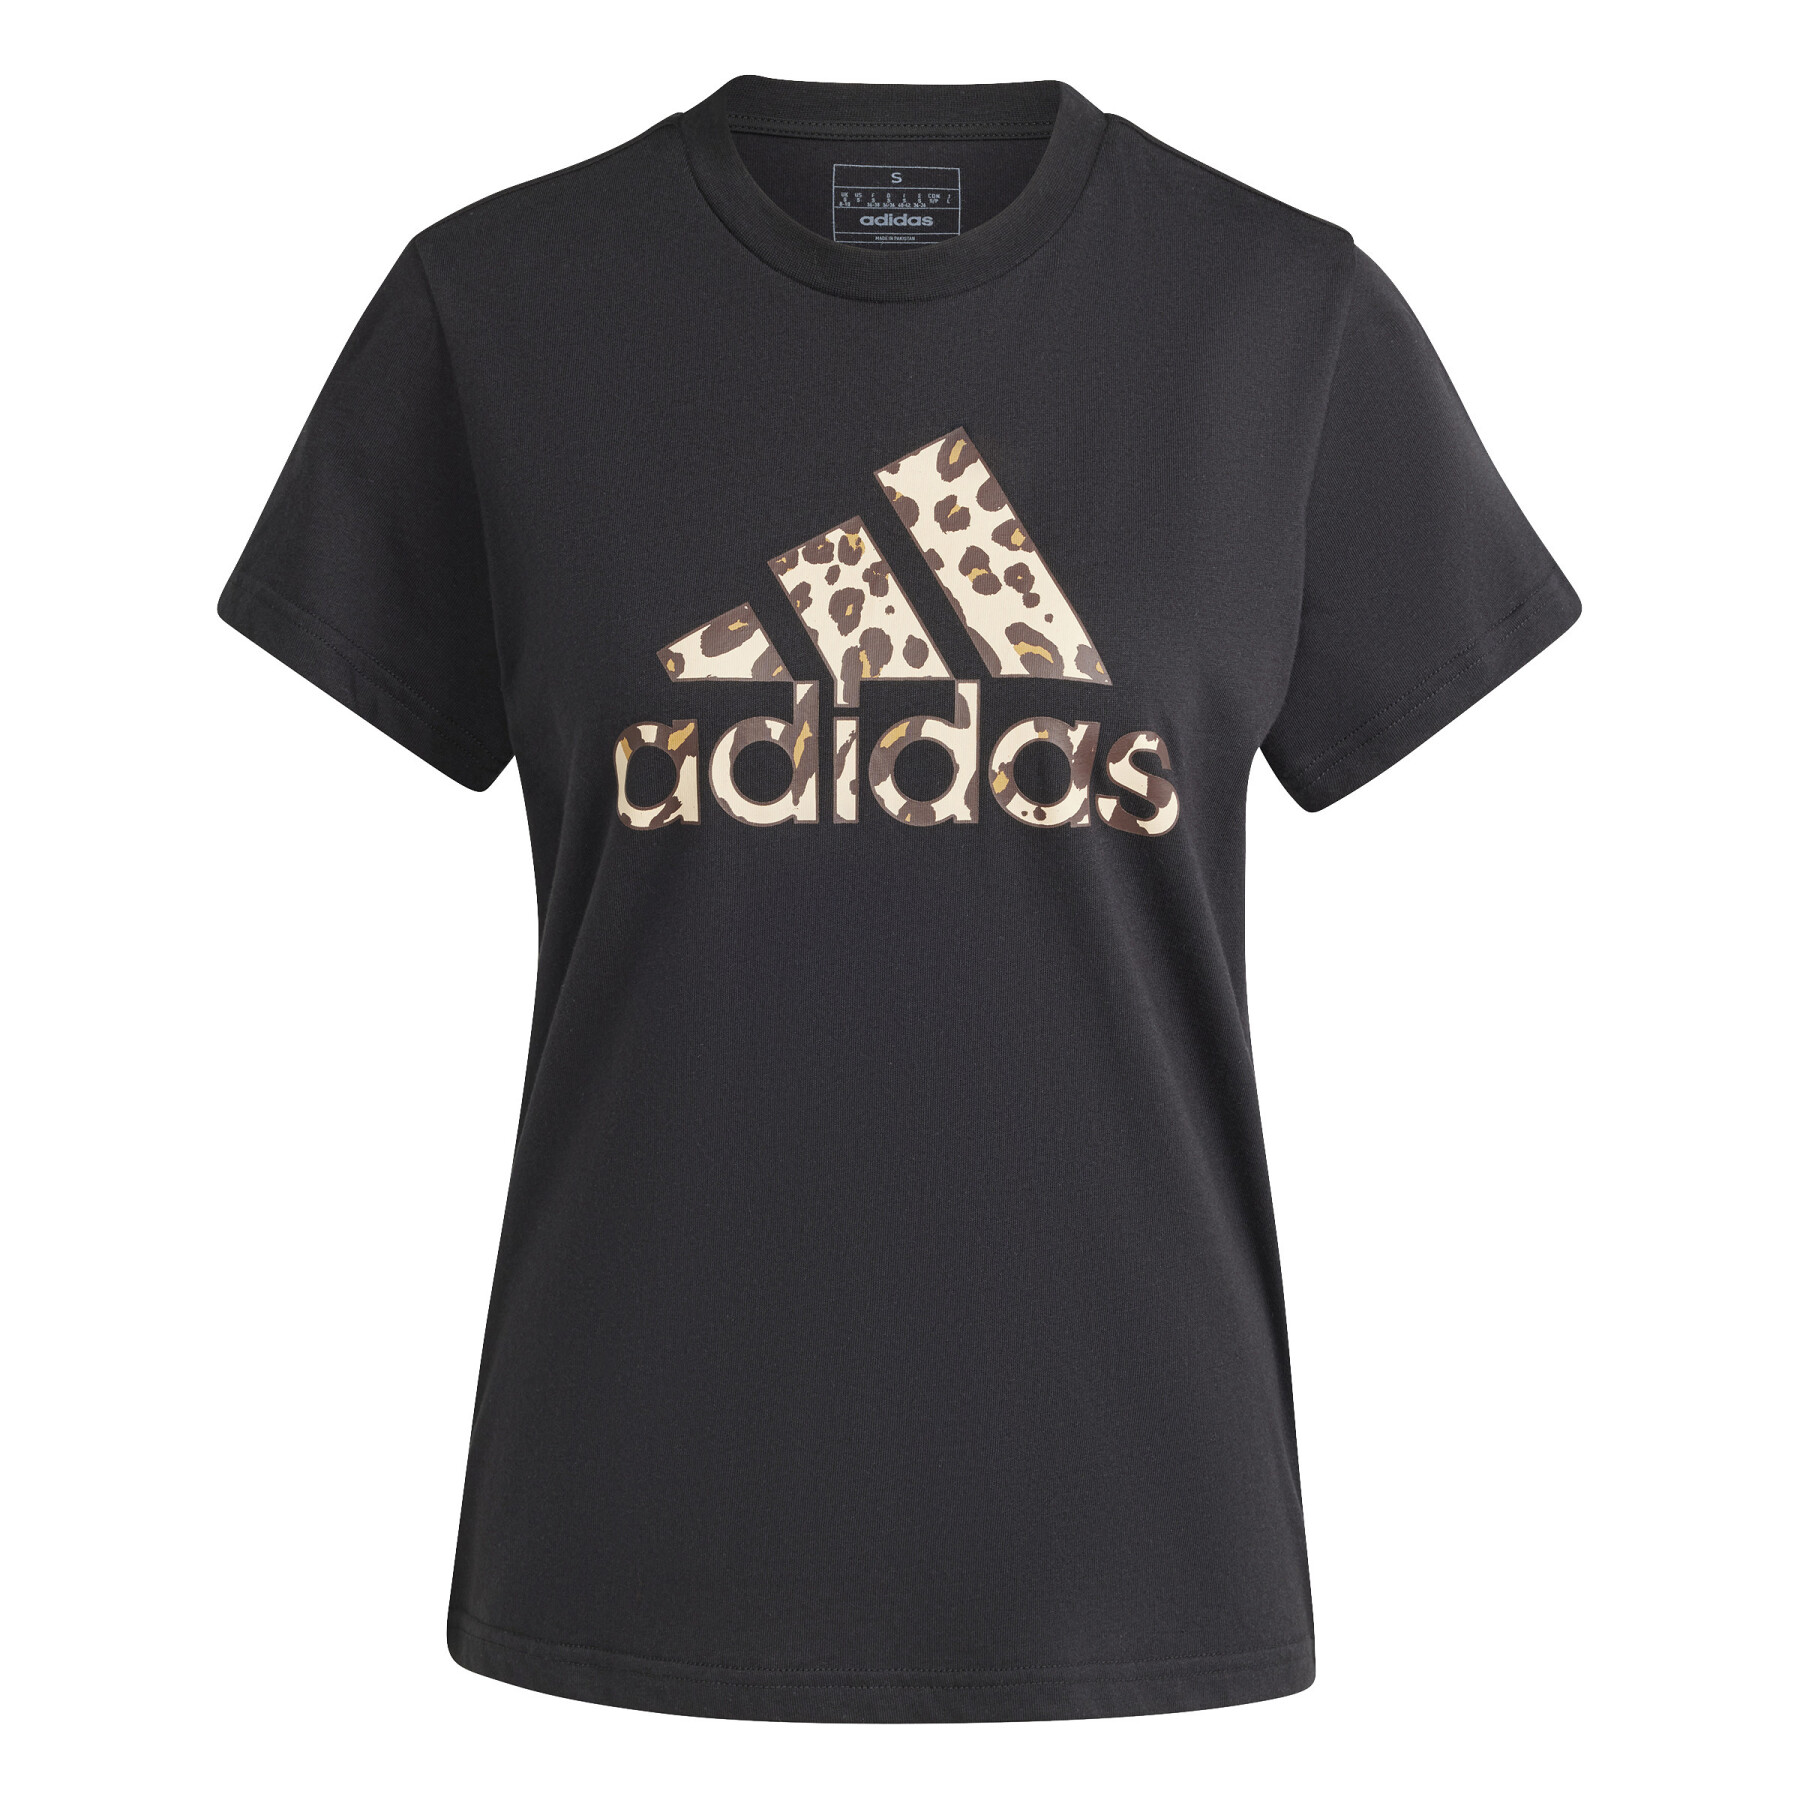 T-Shirt Frau adidas Animal Print Graphic